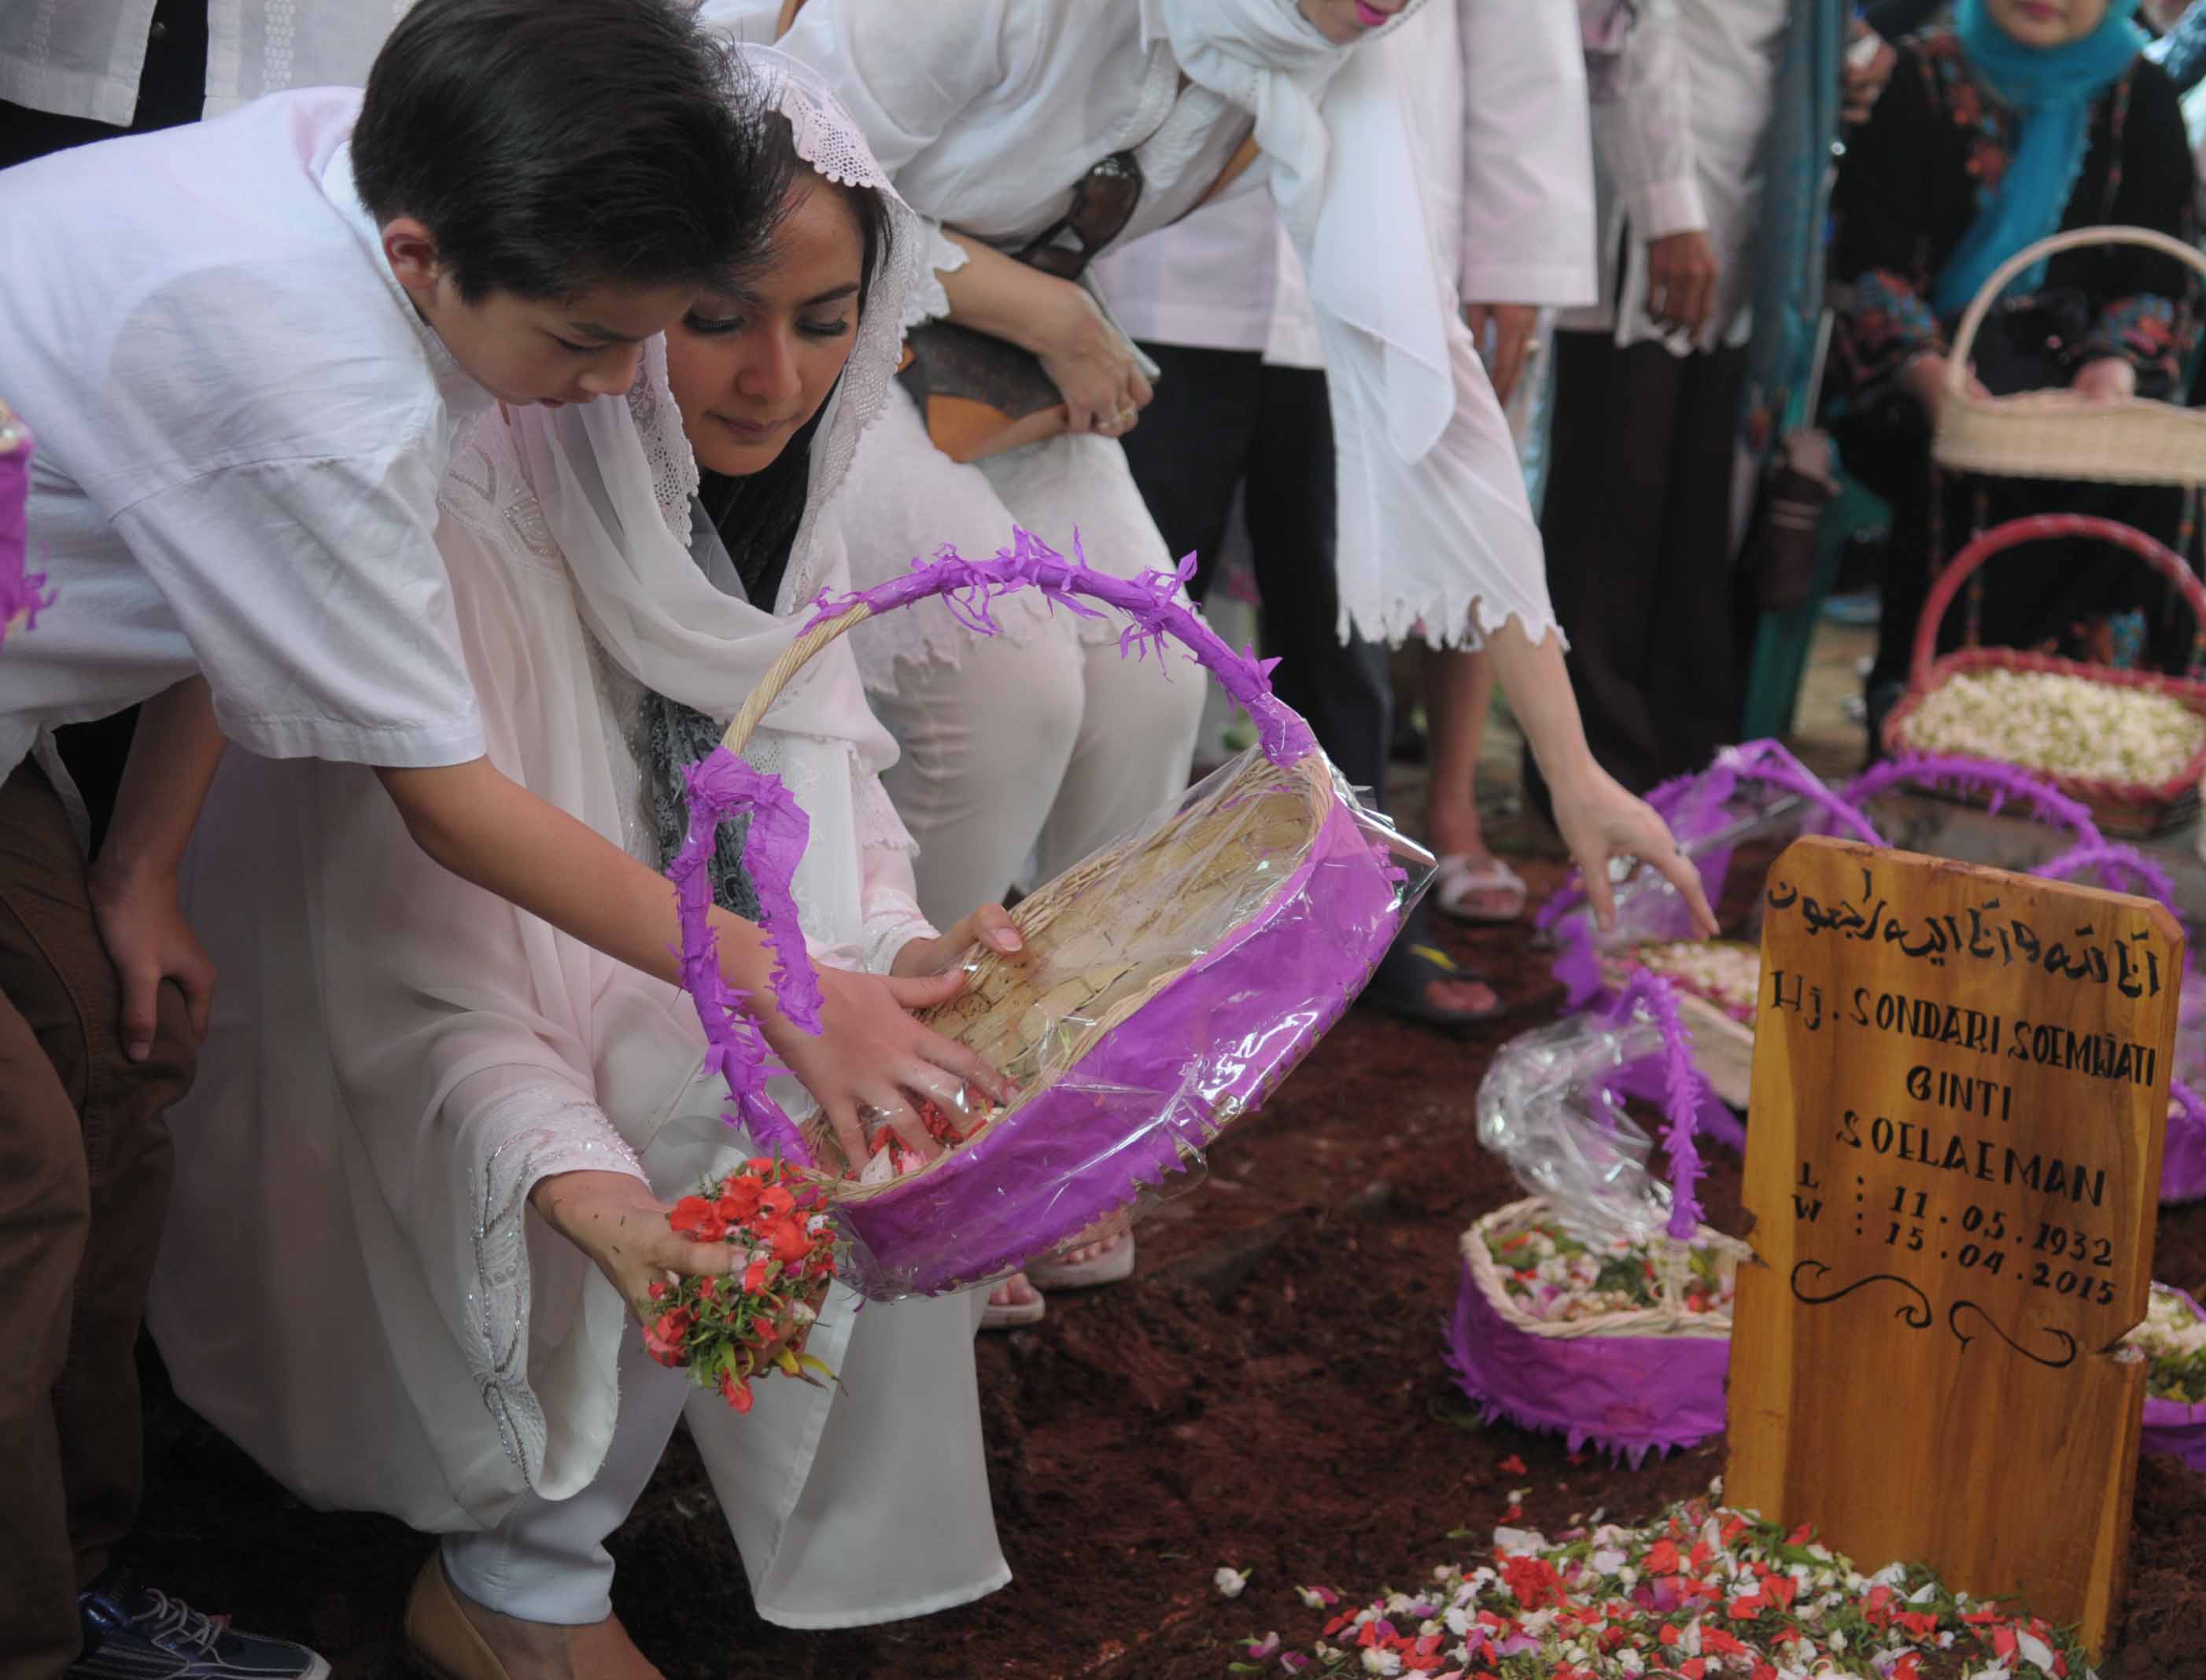 Maudy dan keluarga menguburkan almarhum Sondari Soemijati. ©KapanLagi.com®/Bayu Herdianto